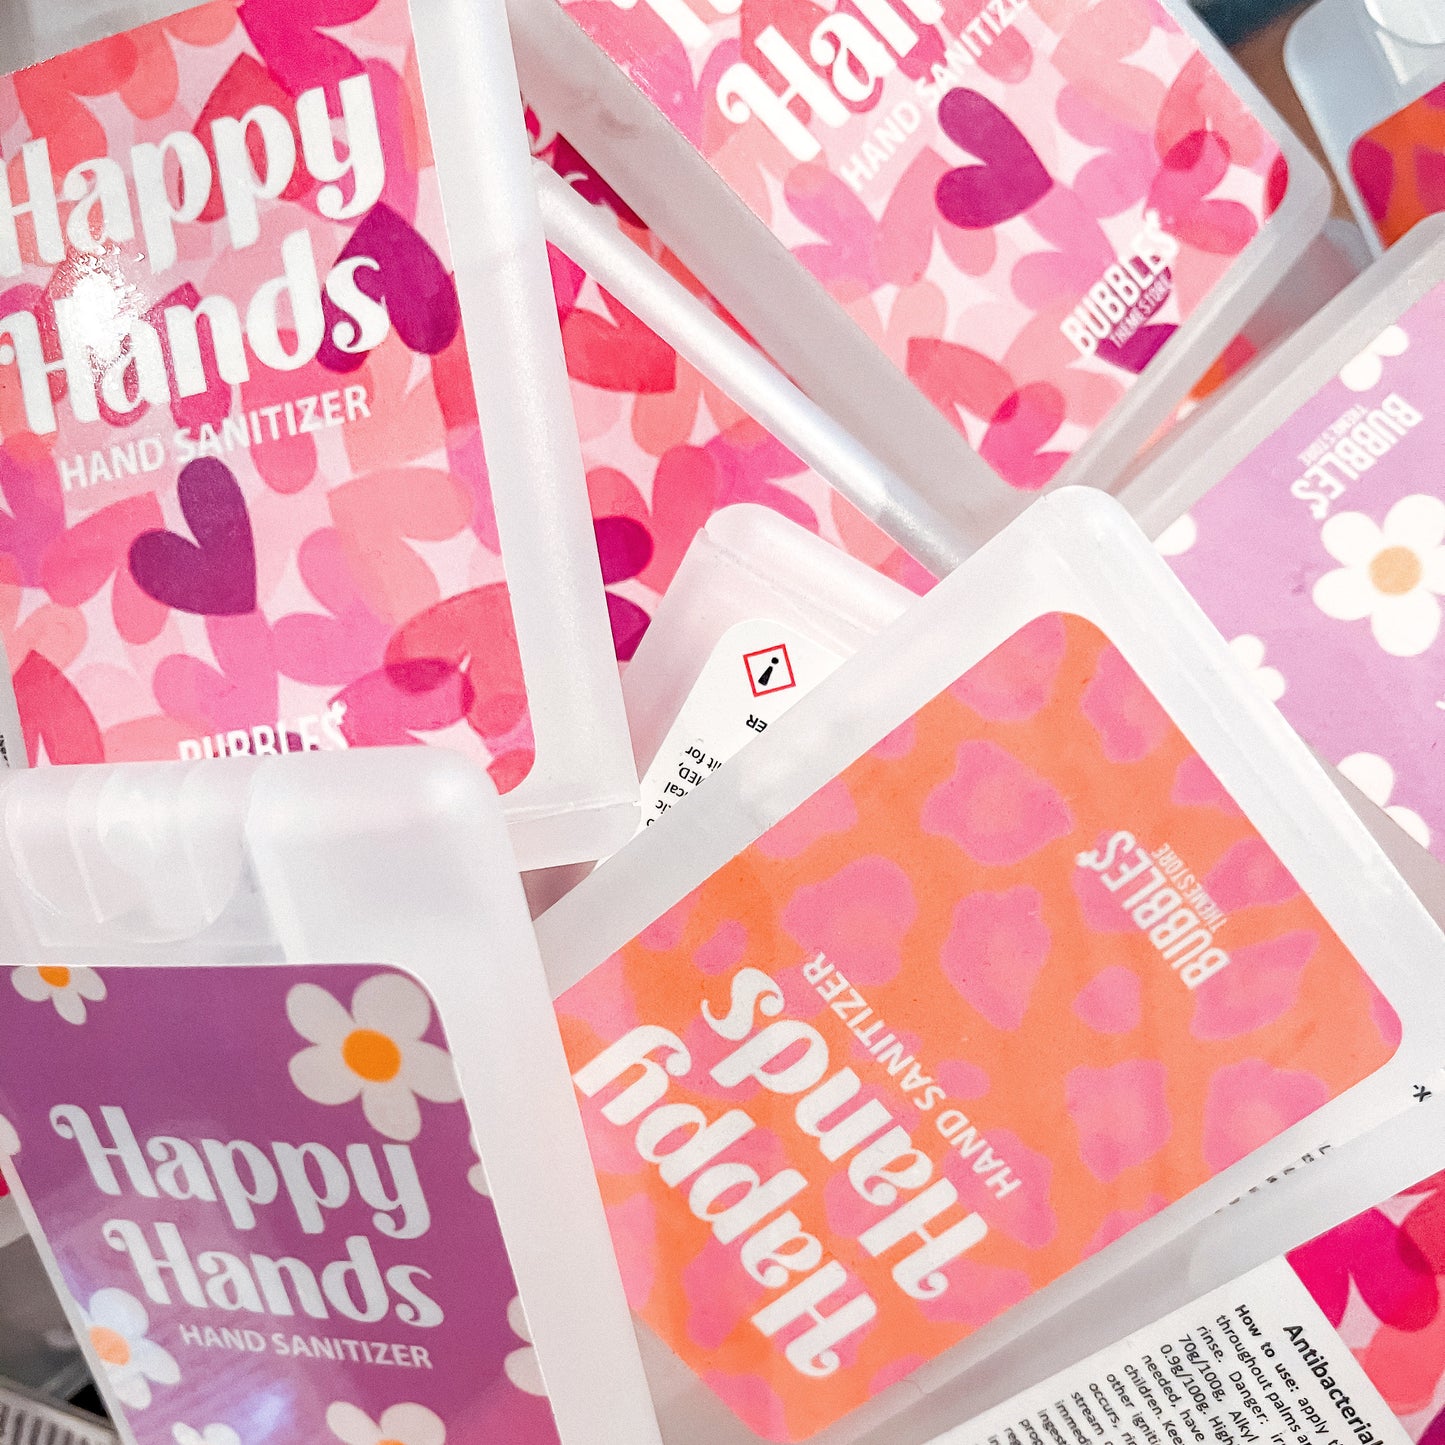 Happy hands desinfectie spray Pink Leopard